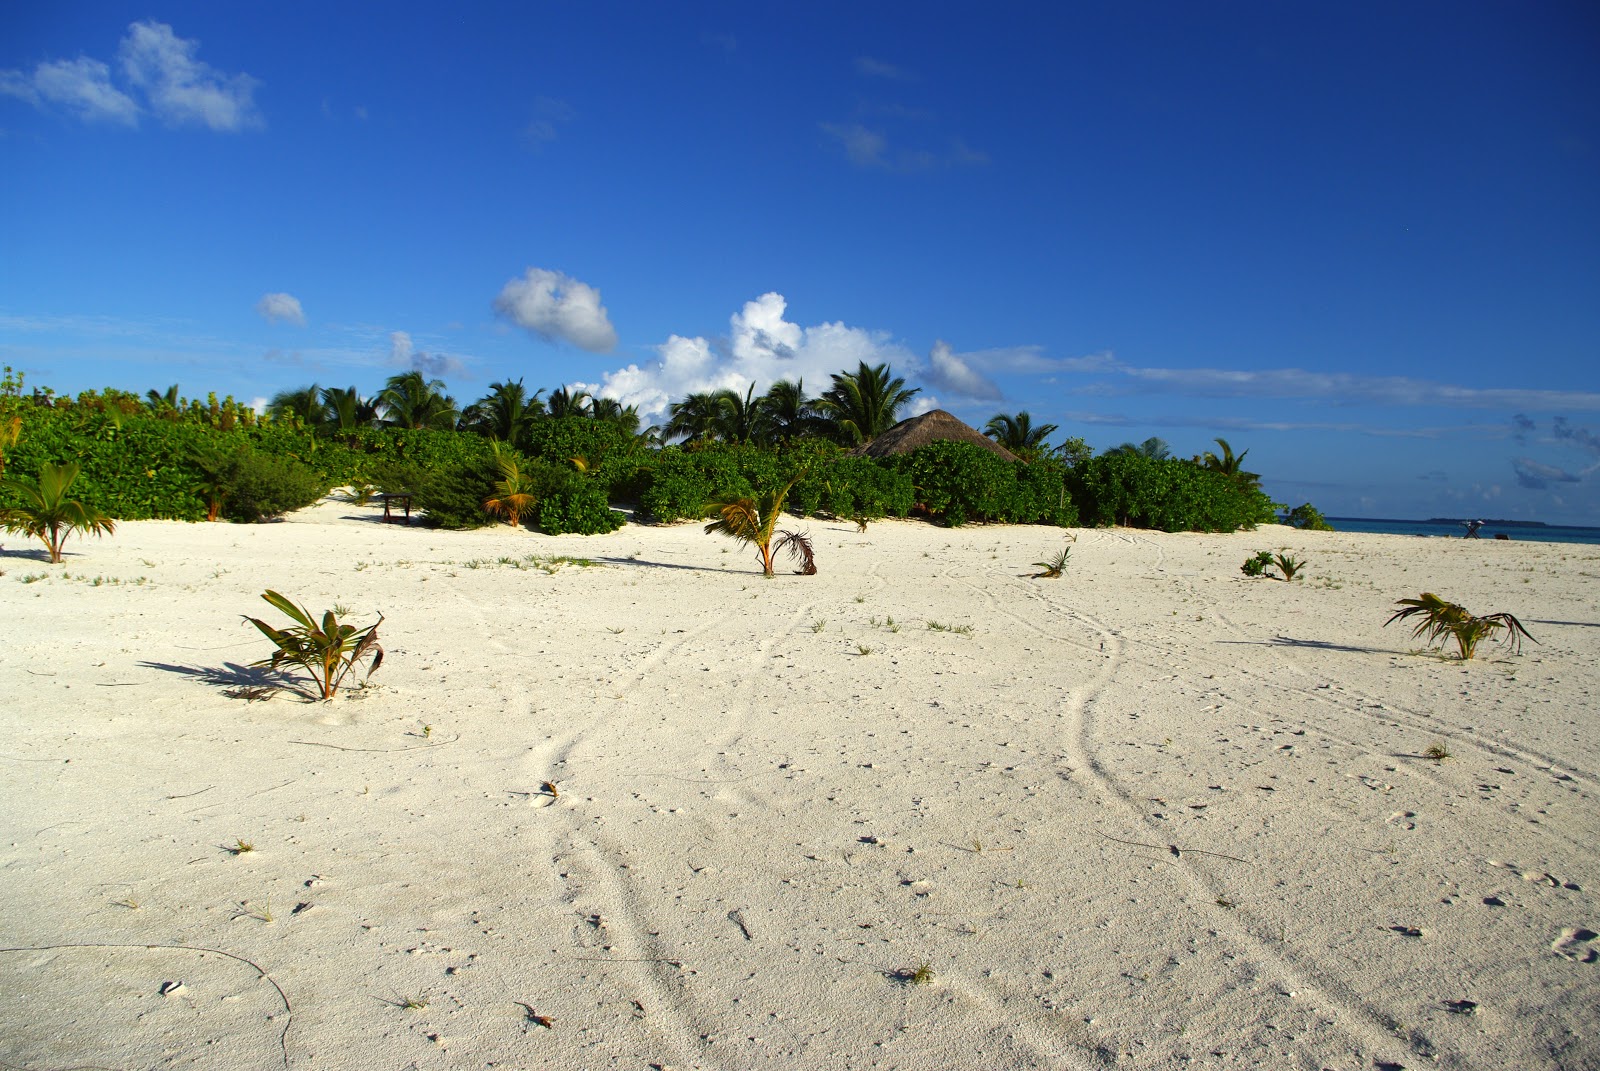 Foto di Feeali Beach ubicato in zona naturale